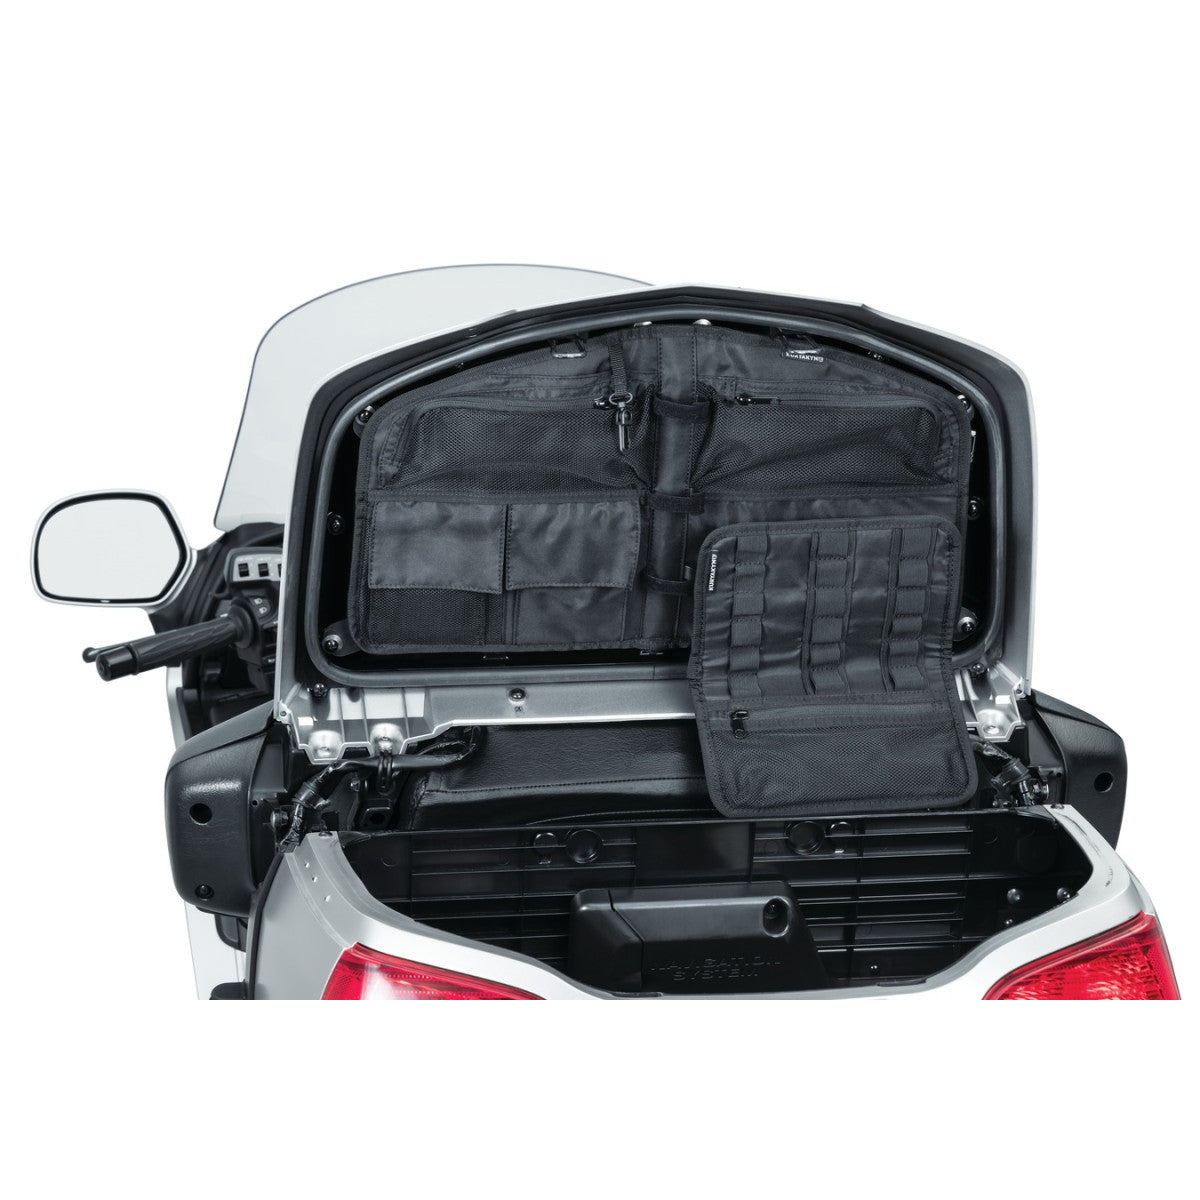 Kofferbak deksel organizer tas voor Honda Gl1800 gold wing modellen (behalve F6B) 01-17